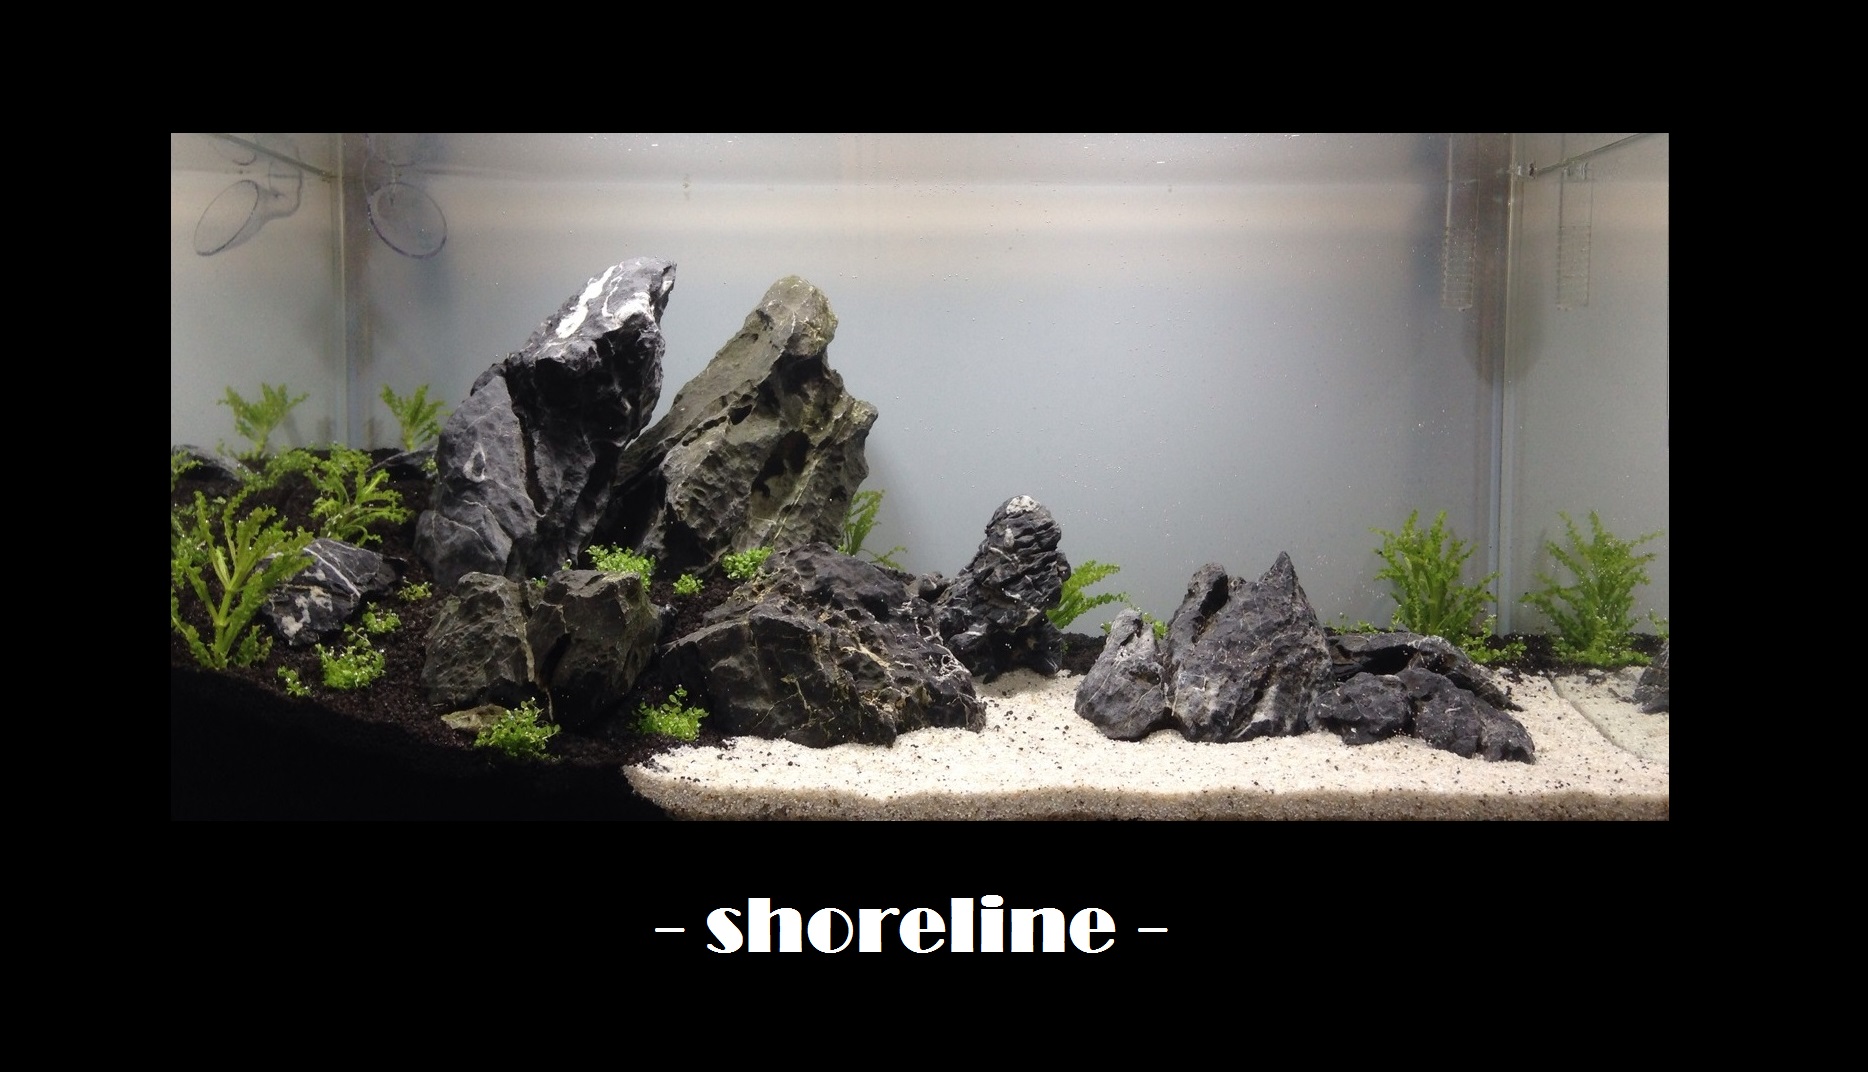 Tag 1 - shoreline